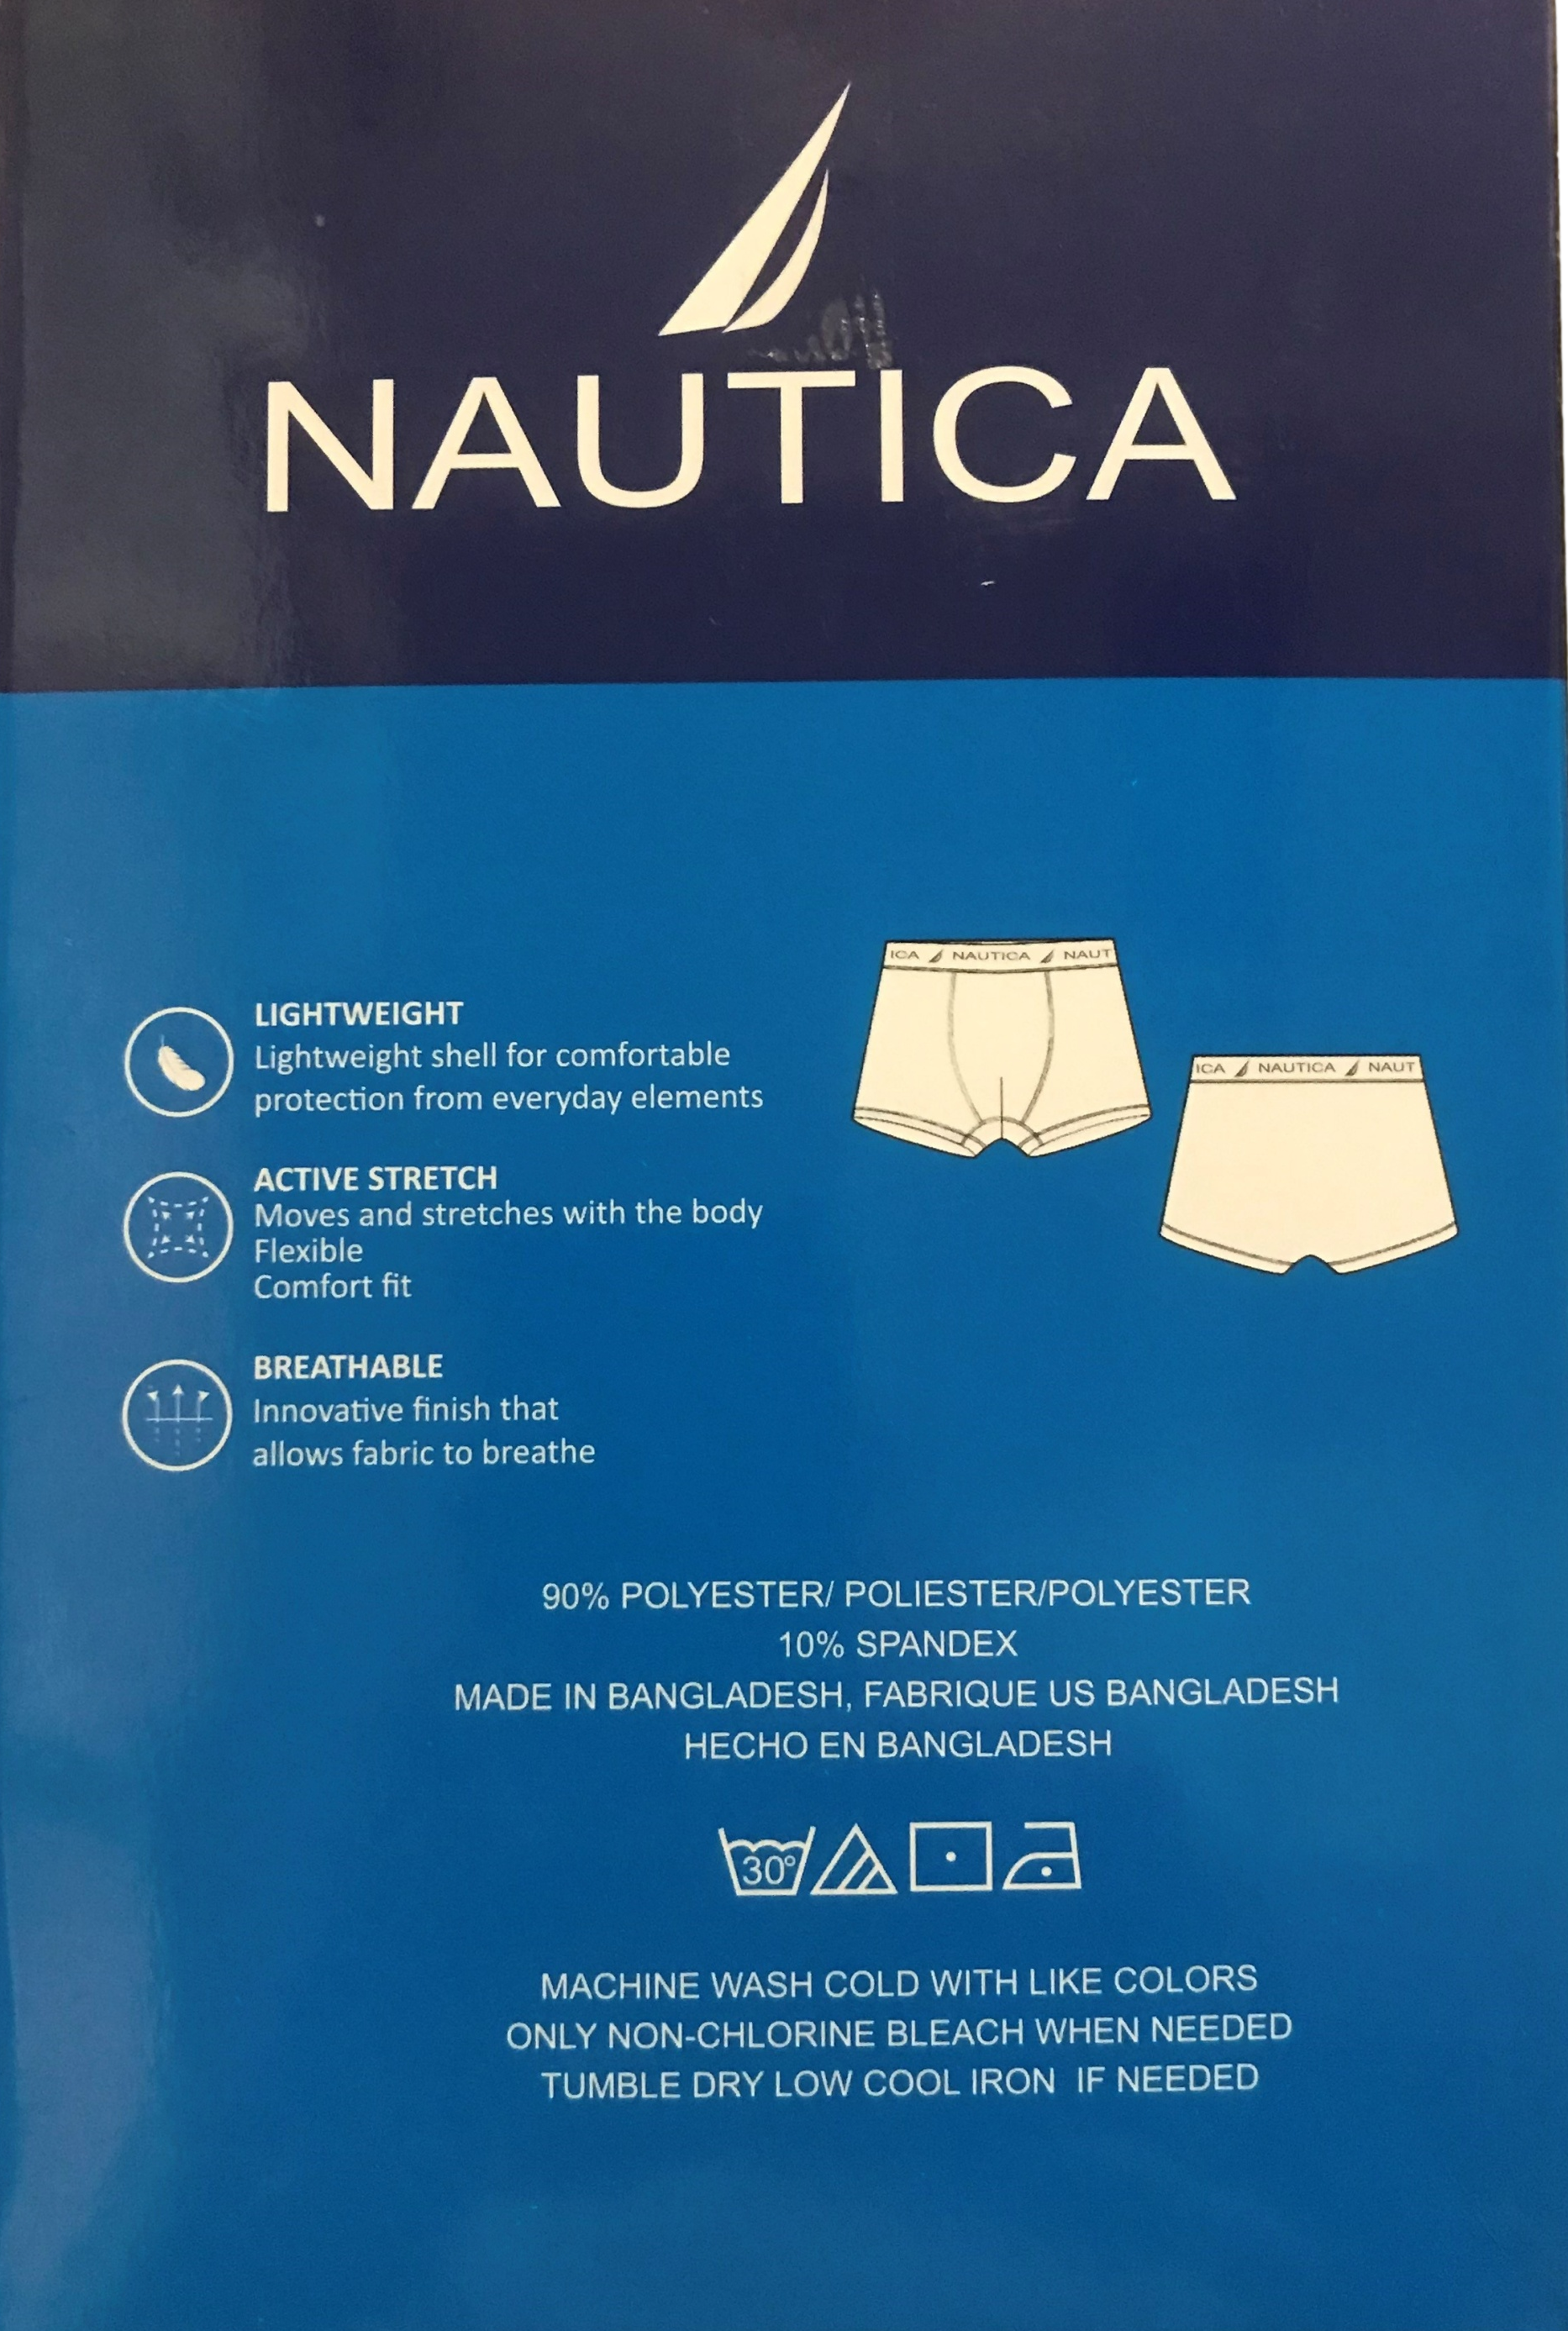 BUNDLE! 3 Nautica shapewear spandex shorts